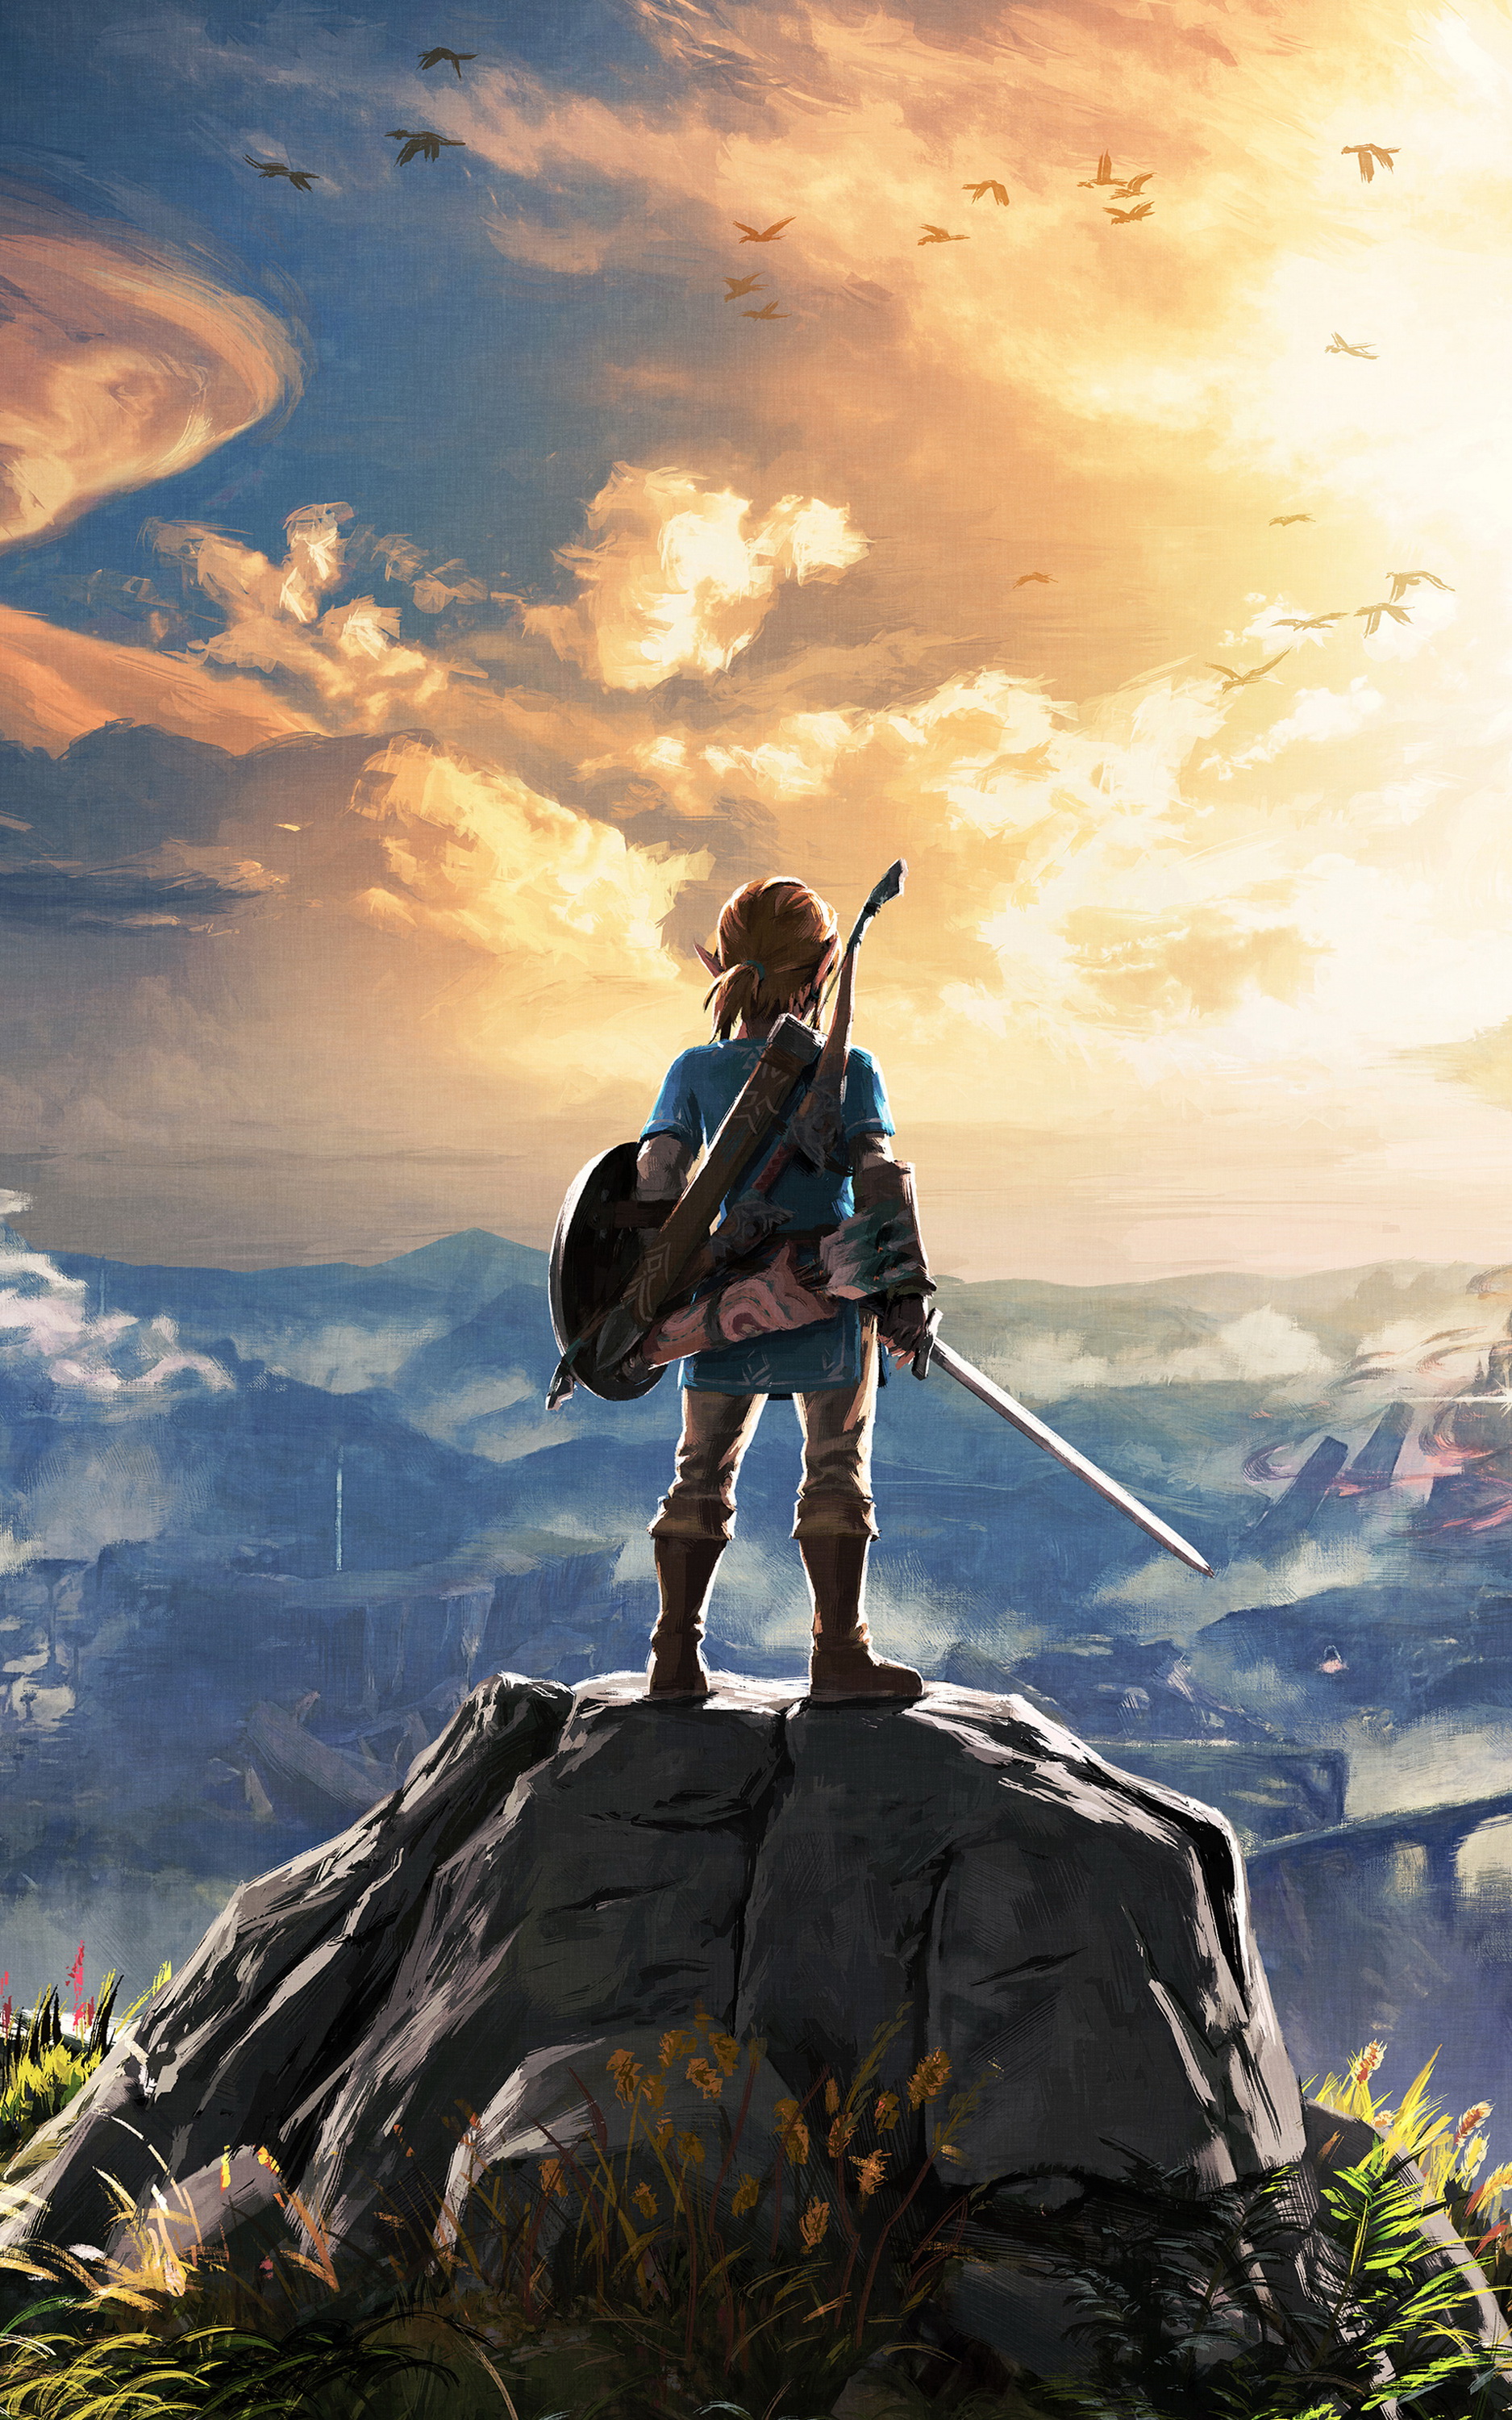 Cùng khám phá và trải nghiệm những khoảnh khắc Huyền Thoại Zelda qua hình nền điện thoại Mobile Legend of Zelda. Hãy để những bức ảnh này đưa bạn vào thế giới tuyệt vời của game thủ một cách hoàn toàn mới.